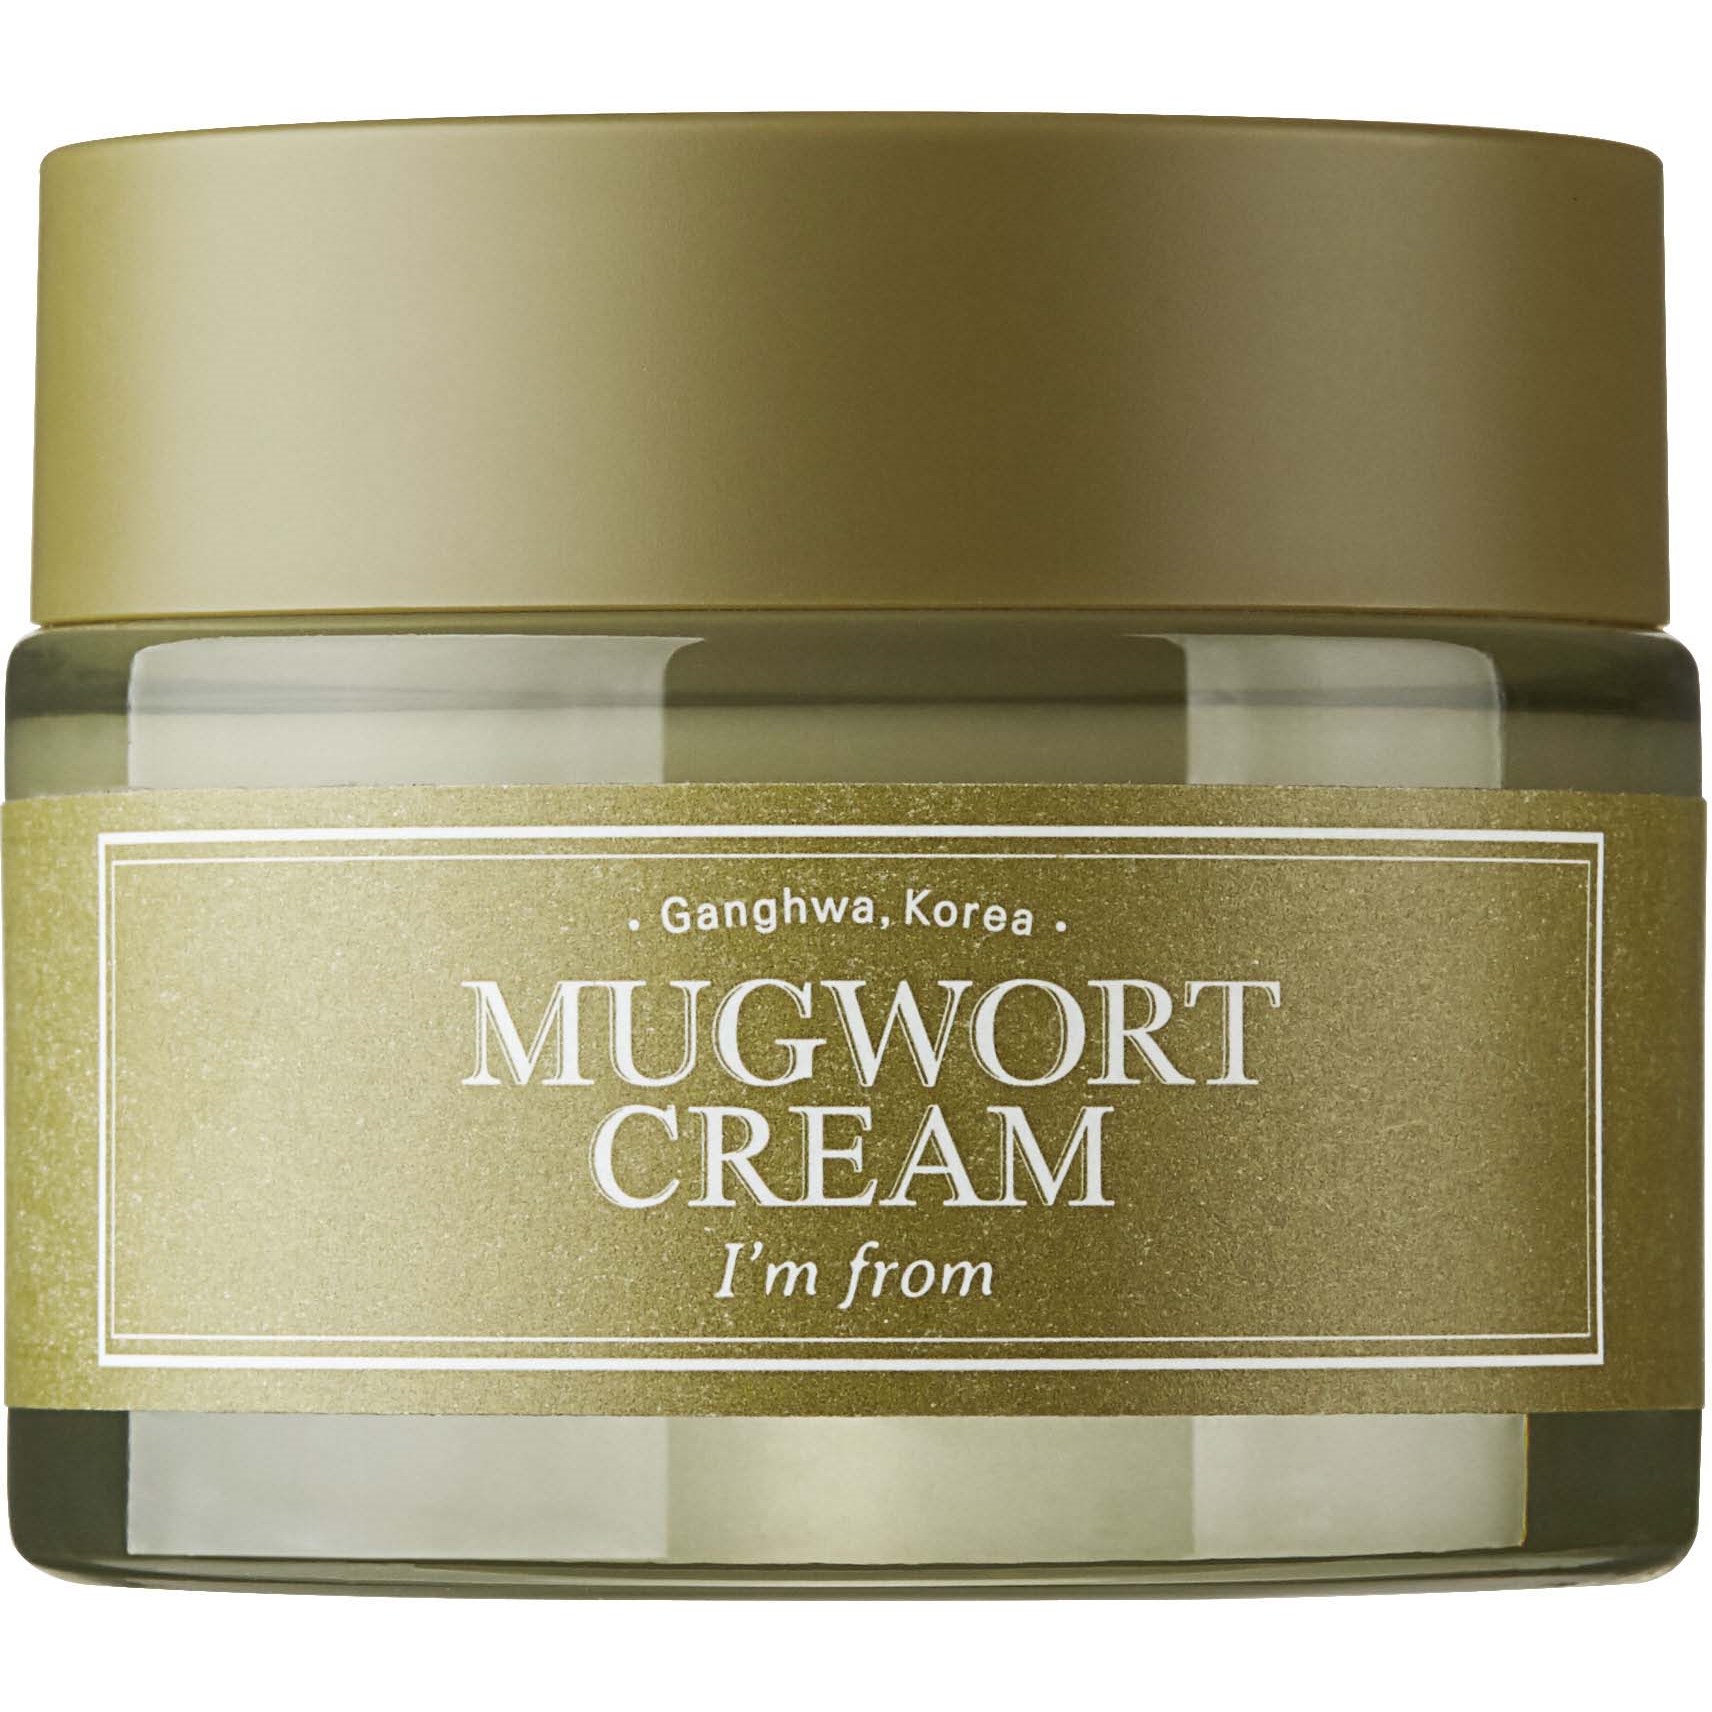 Im From Mugwort Cream 50 g